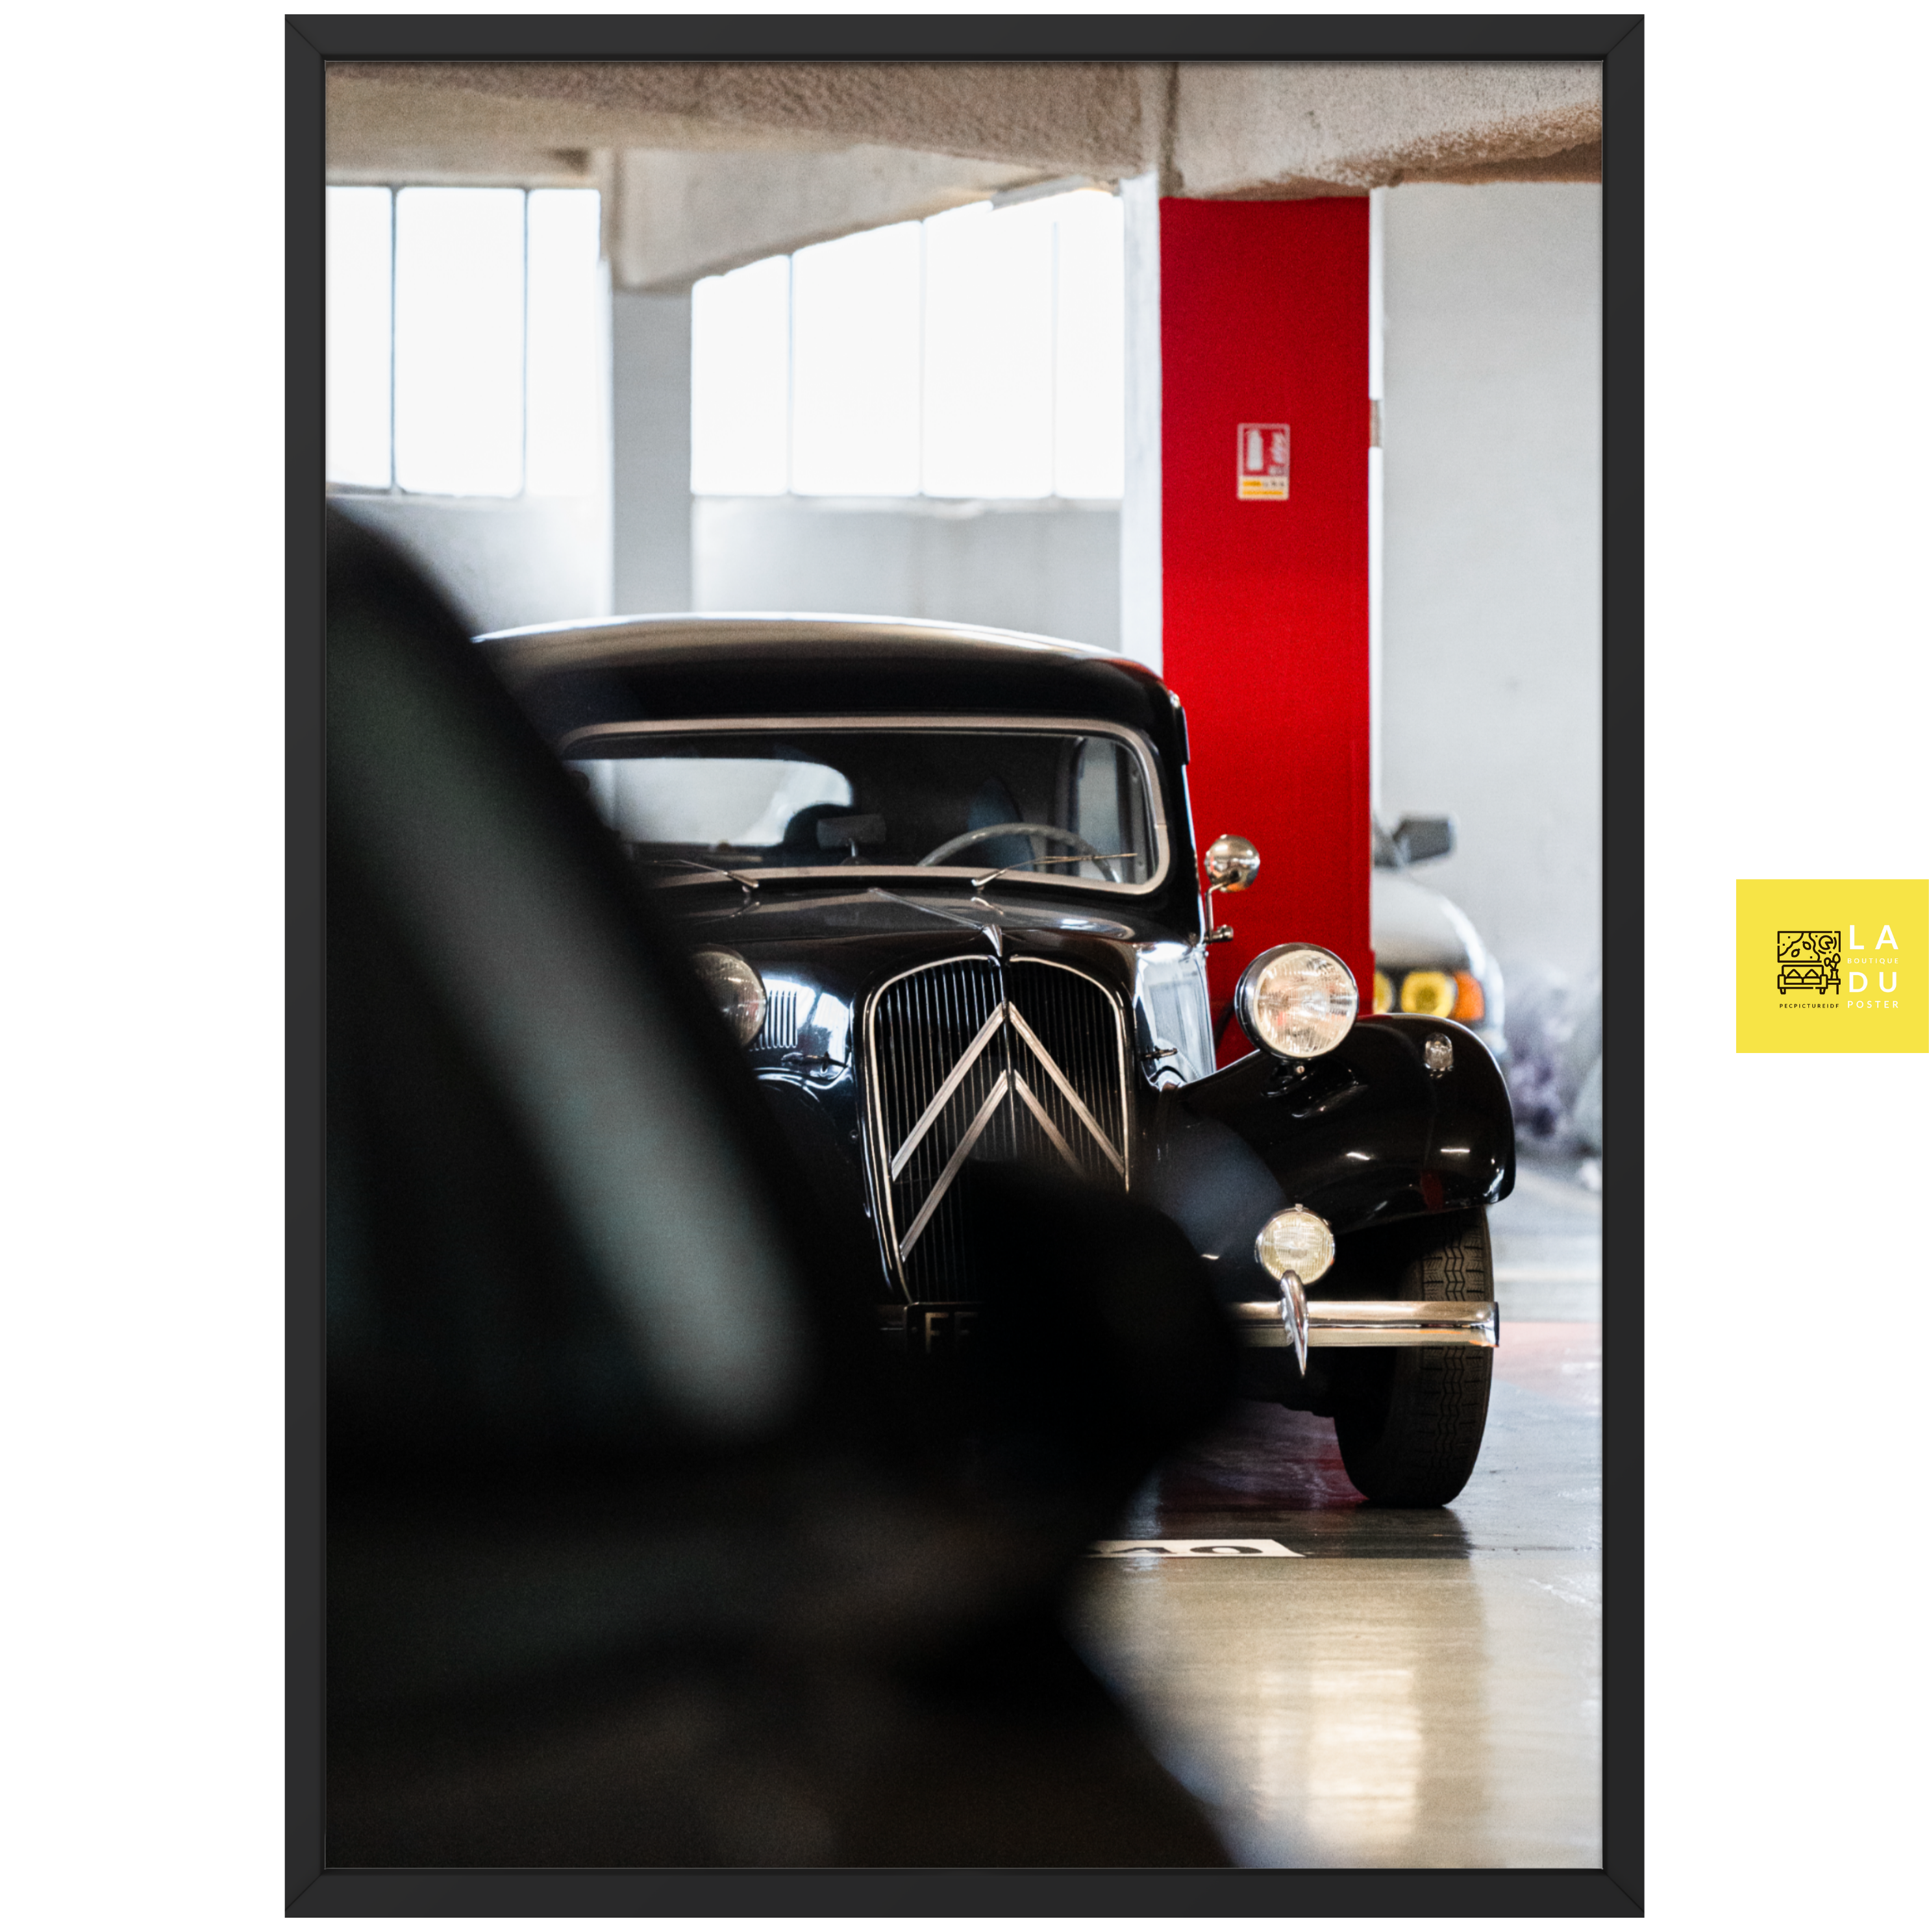 Poster mural - Citroën traction avant – Photographie de vielle voiture – Poster photo, poster XXL, photographie murale et des posters muraux unique au monde. La boutique de posters créée par Yann Peccard un Photographe français.